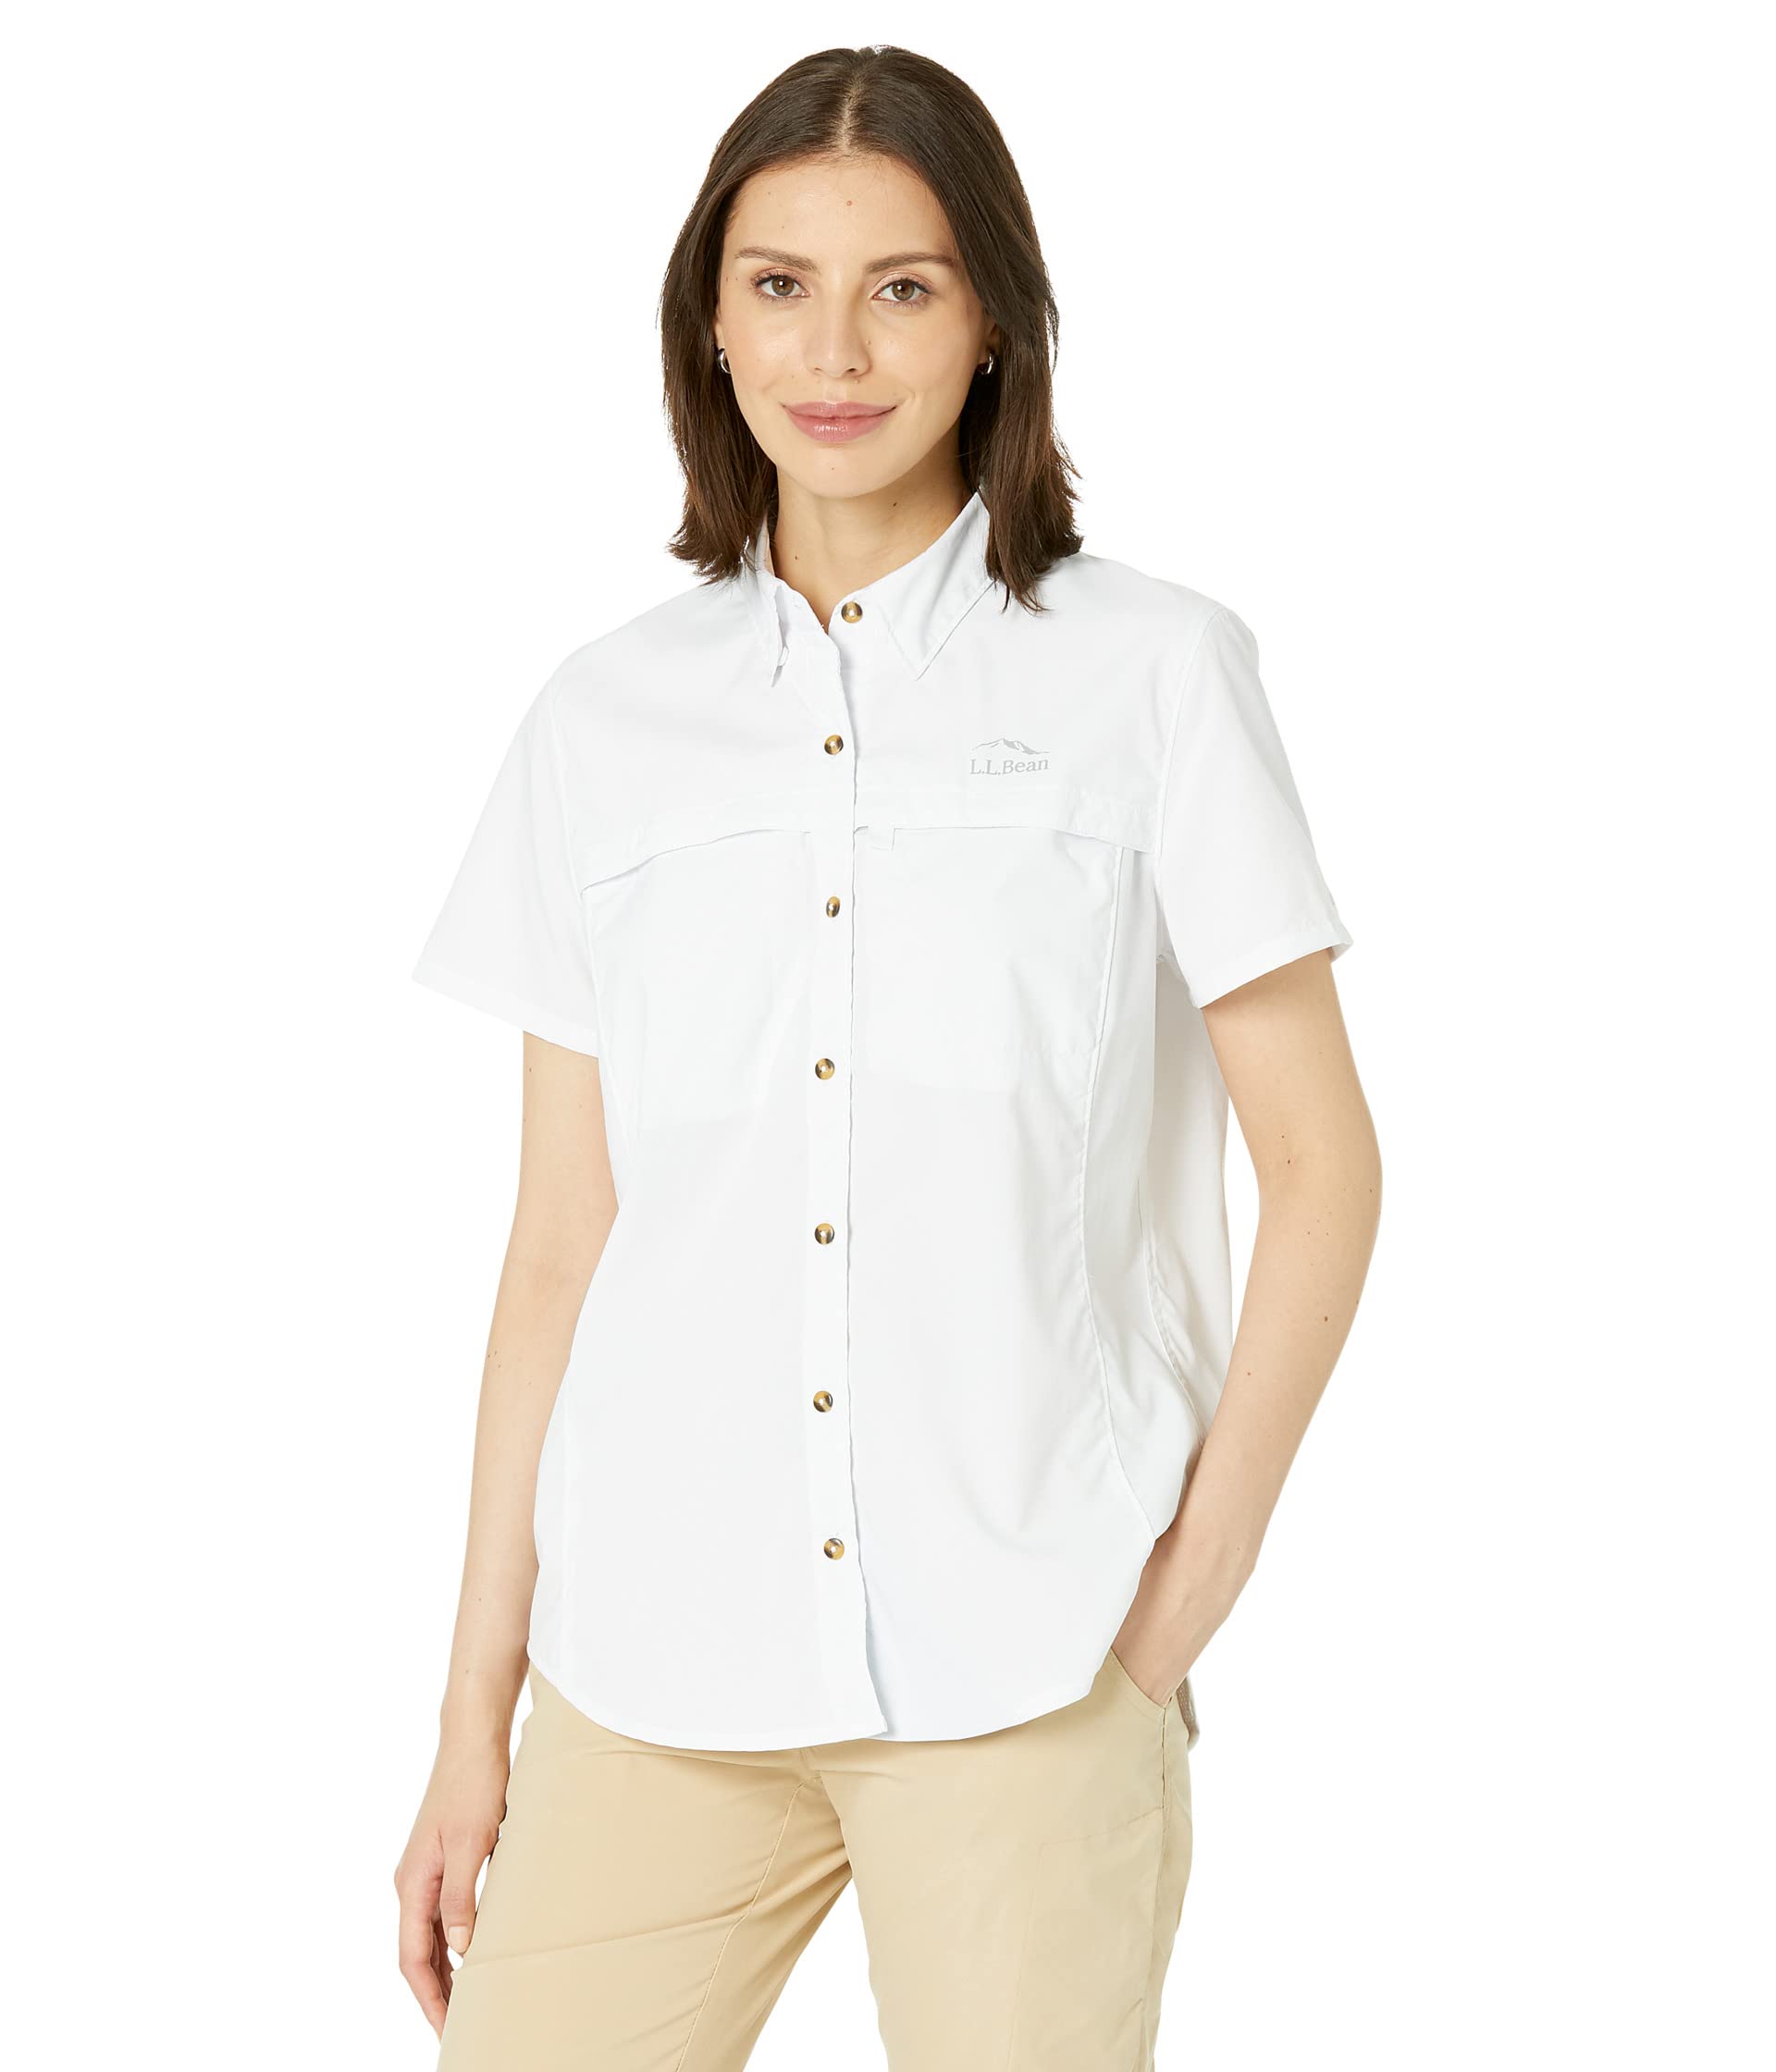 Рубашка Tropicwear с коротким рукавом L.L.Bean